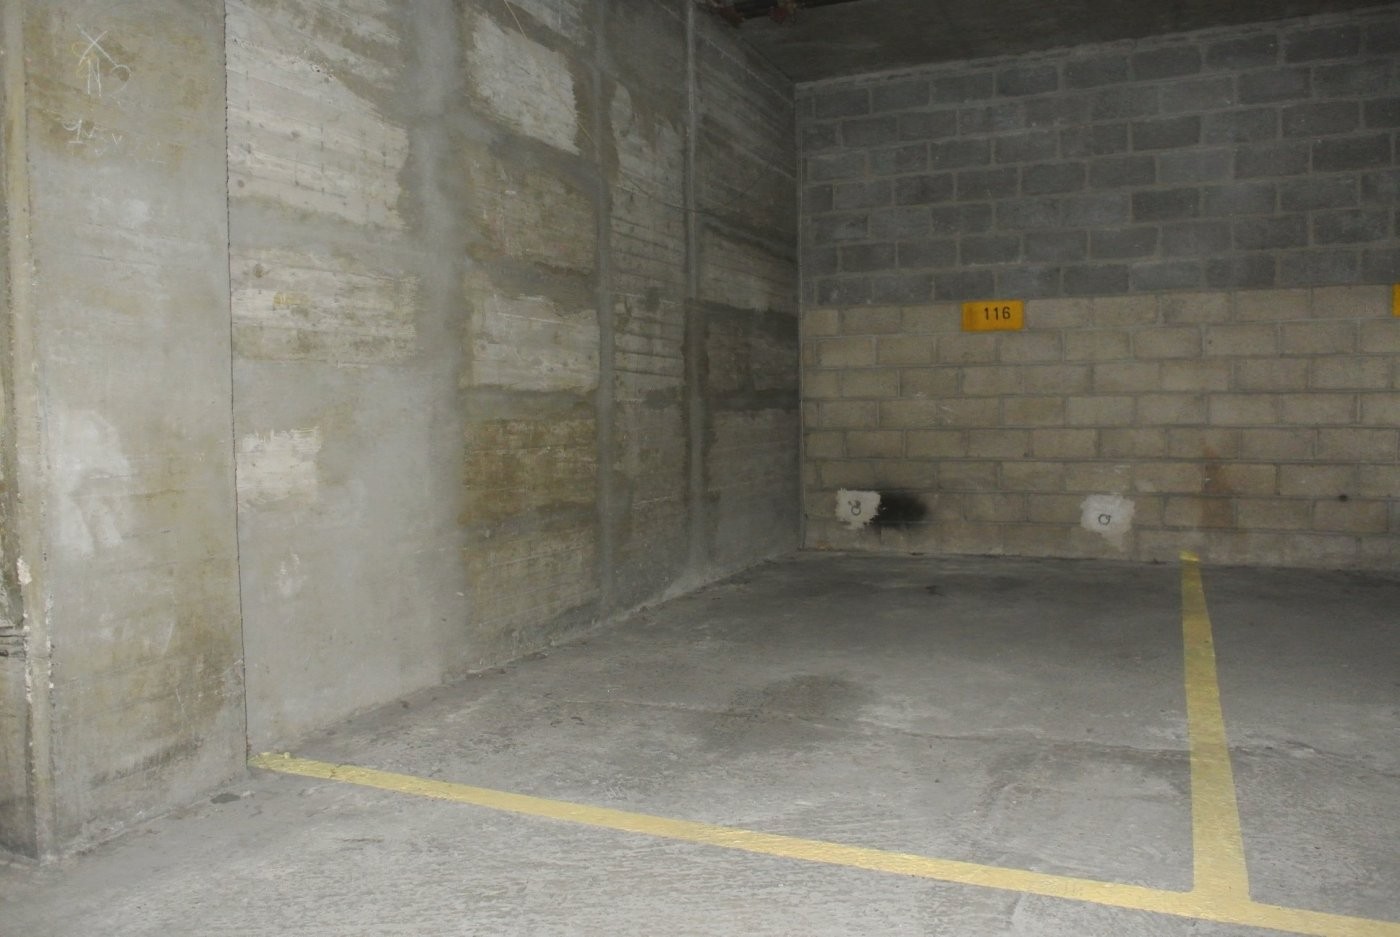 Location Garage / Parking à Paris Vaugirard 15e arrondissement 0 pièce